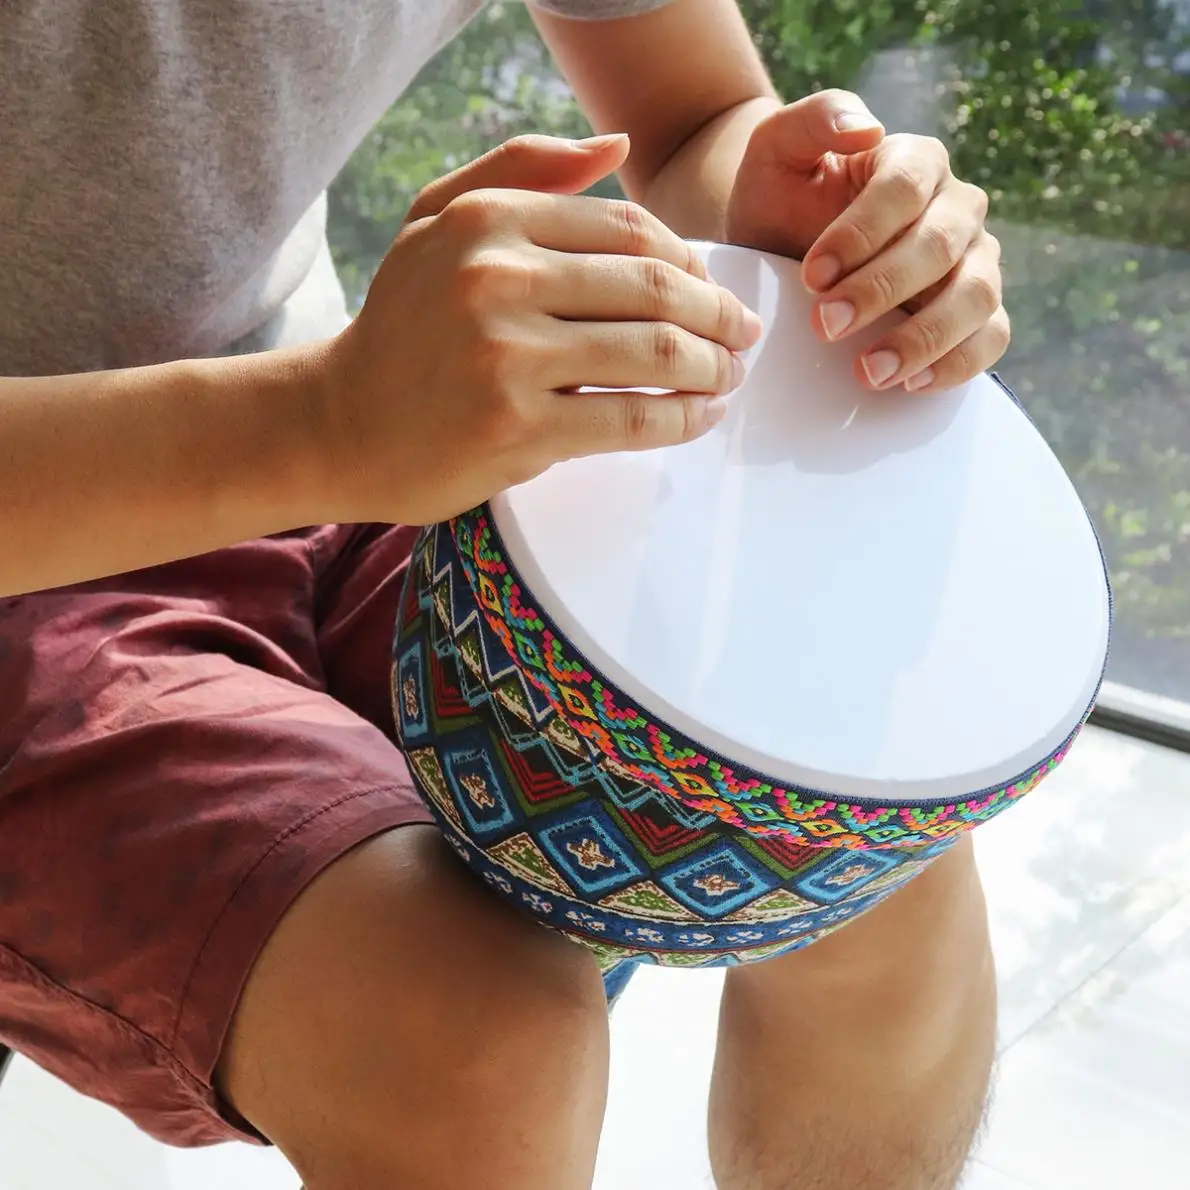 8 дюймов Африканский Djembe барабан красочные ткани искусства ABS баррель ПВХ кожи детей ручной барабан